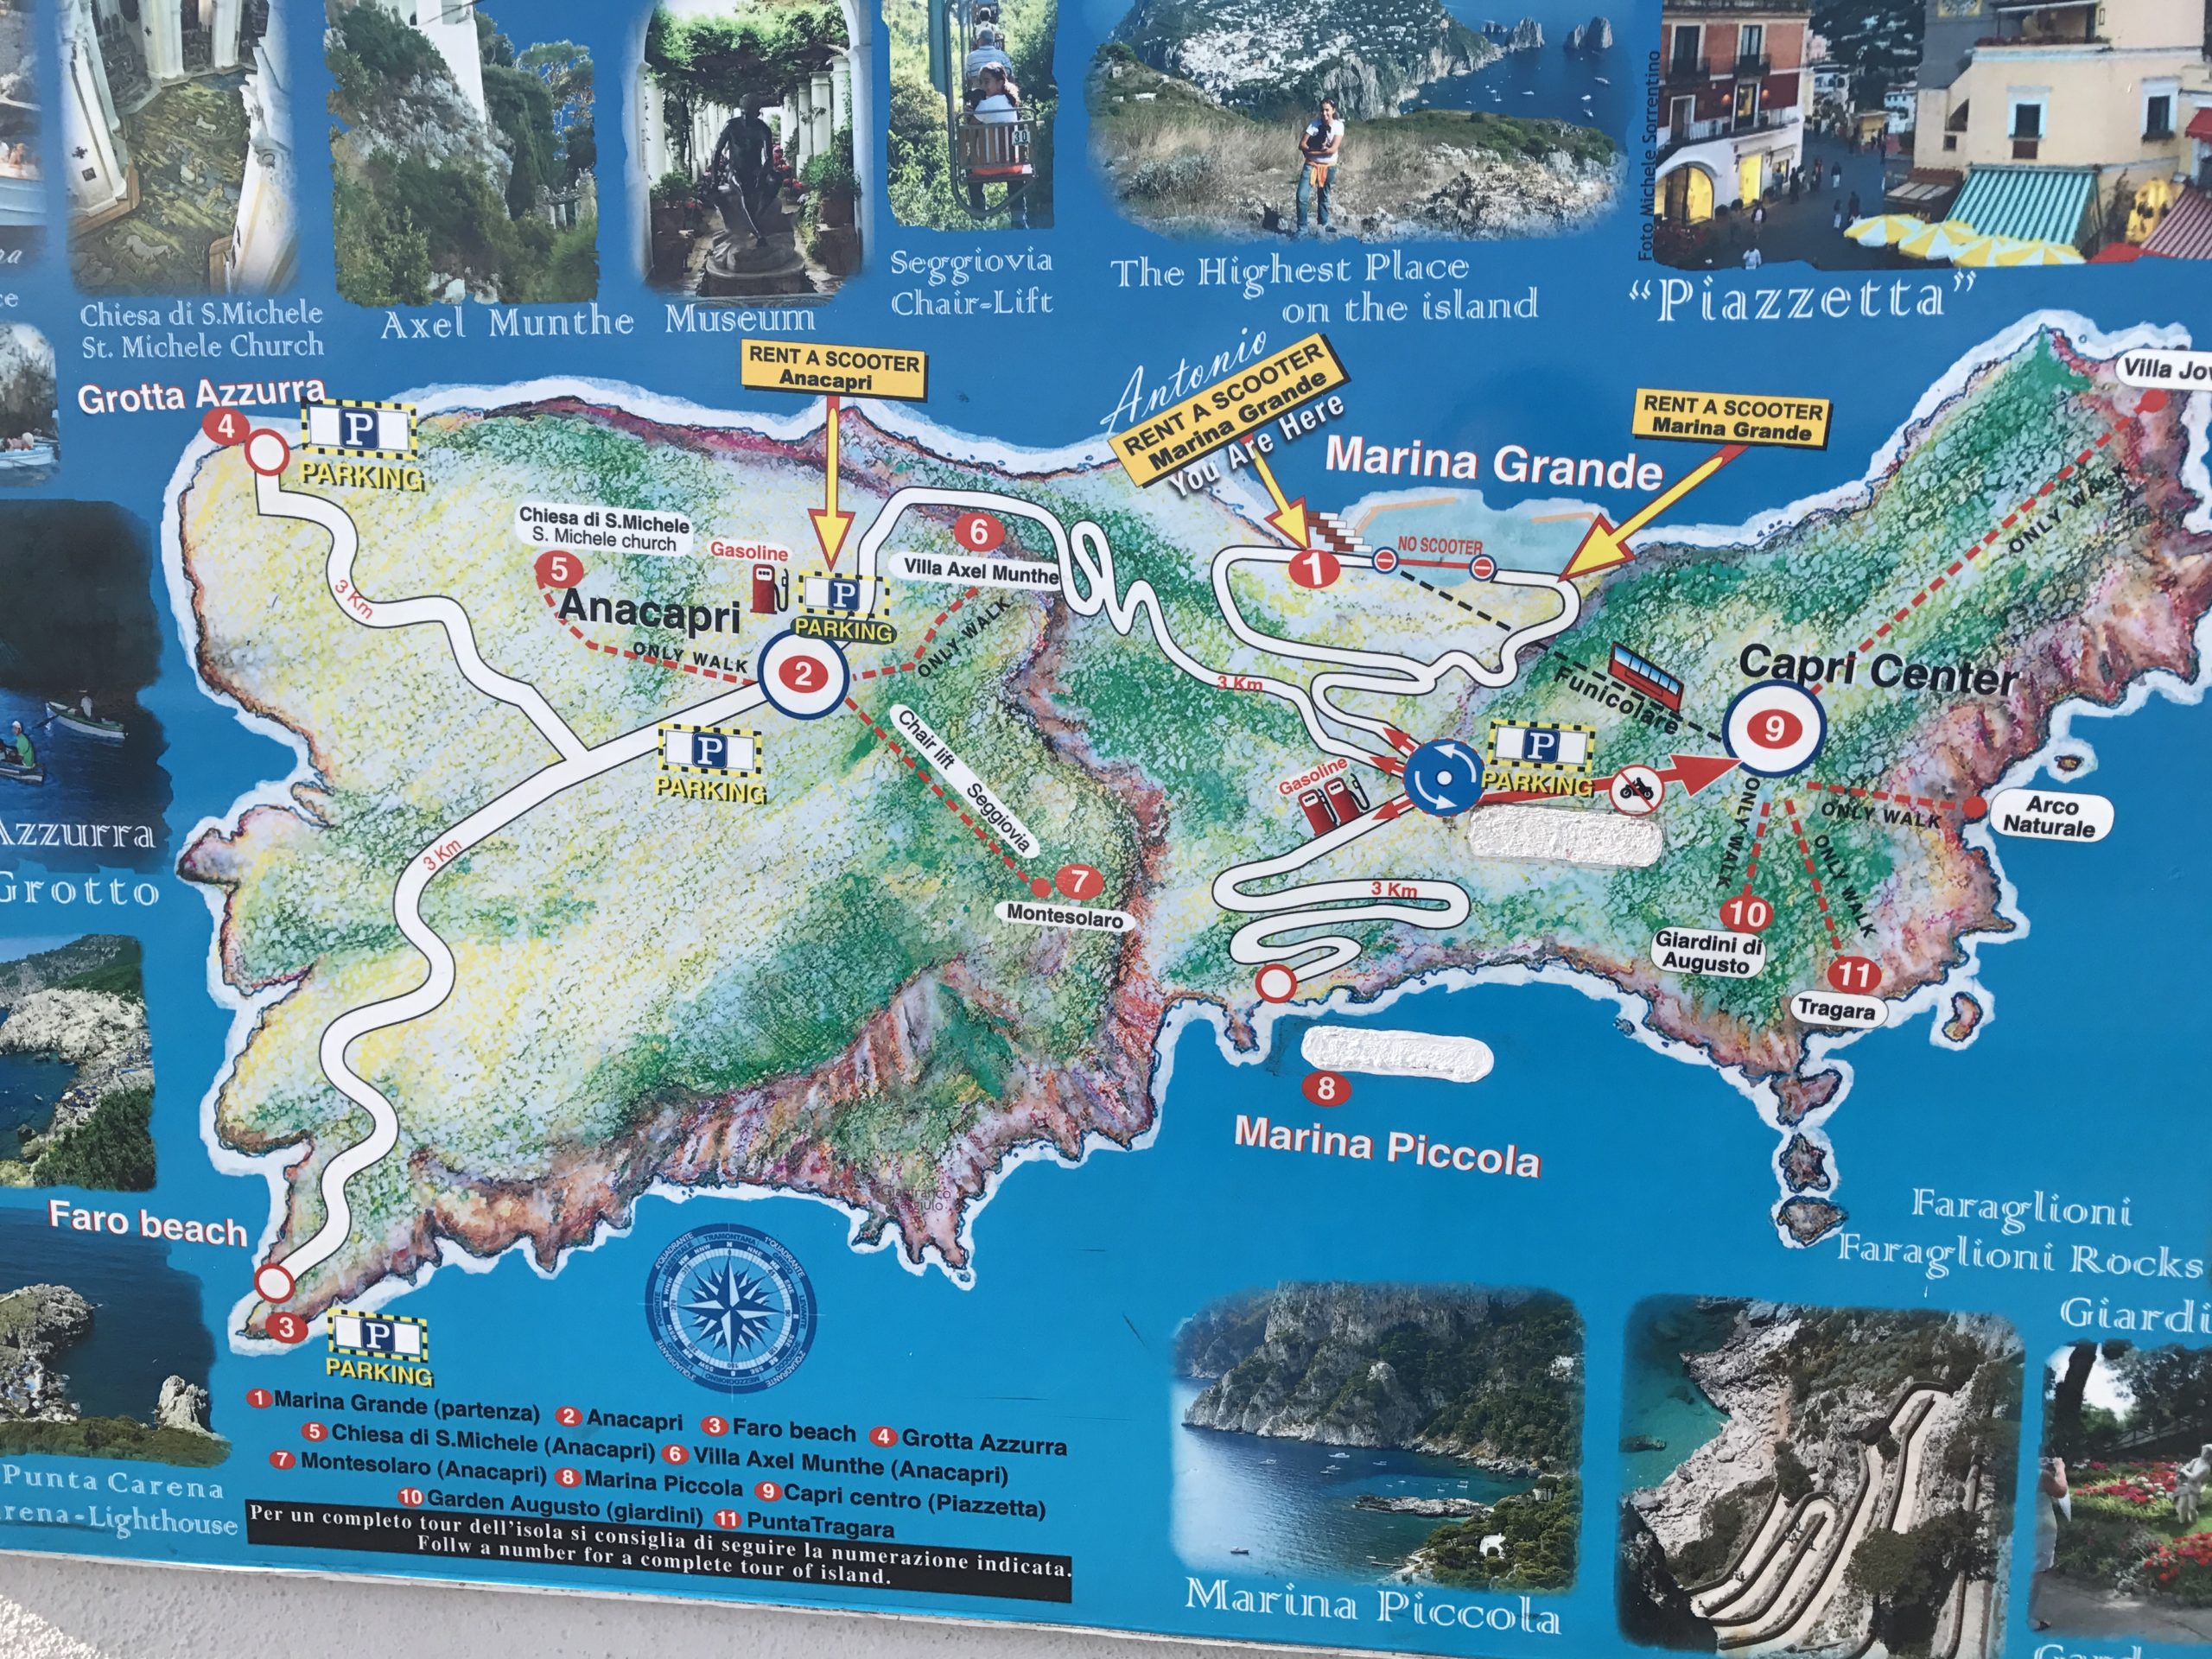 Map of Capri